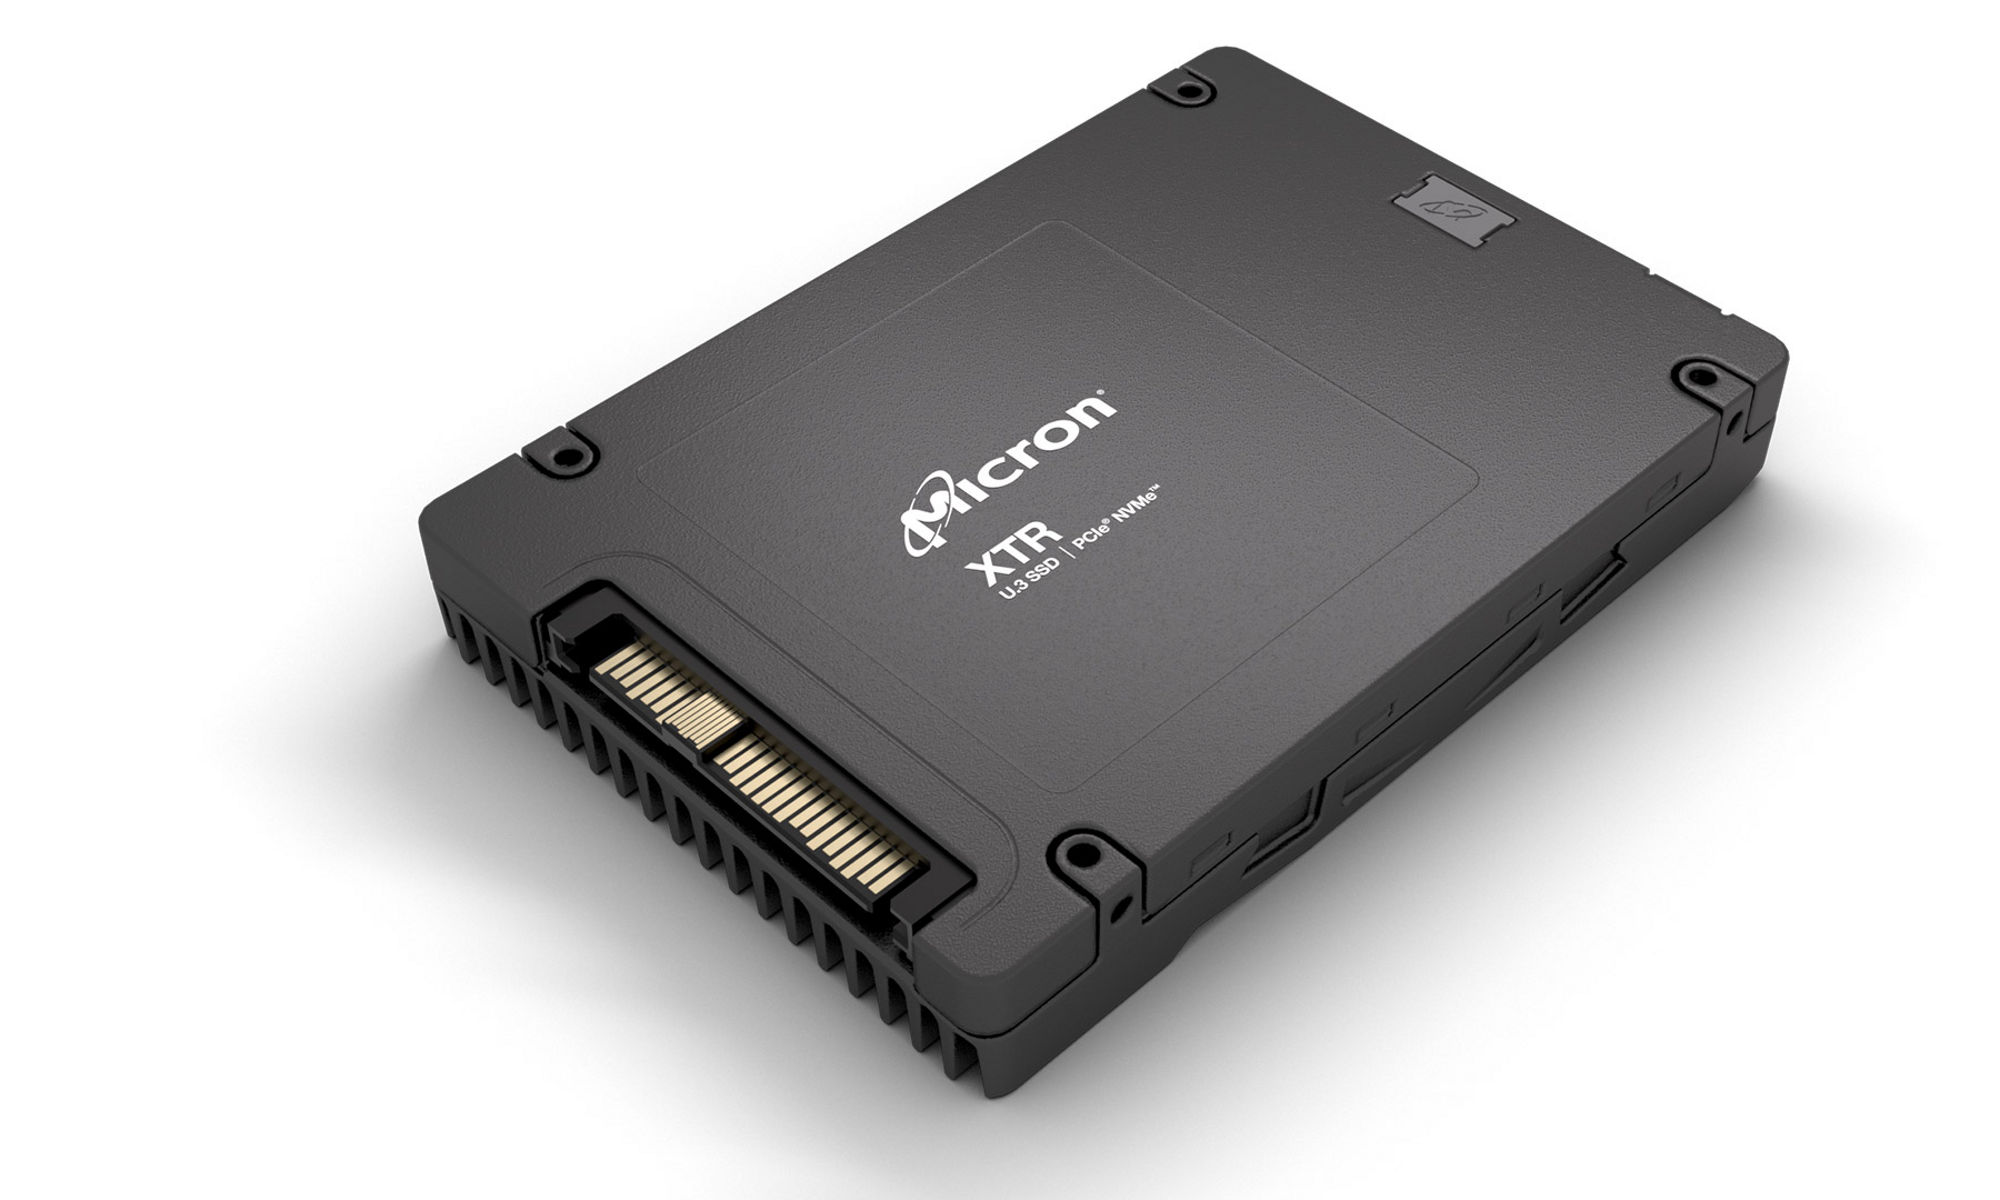 Micron XTR NVMe SSD | Micron Technology Inc.